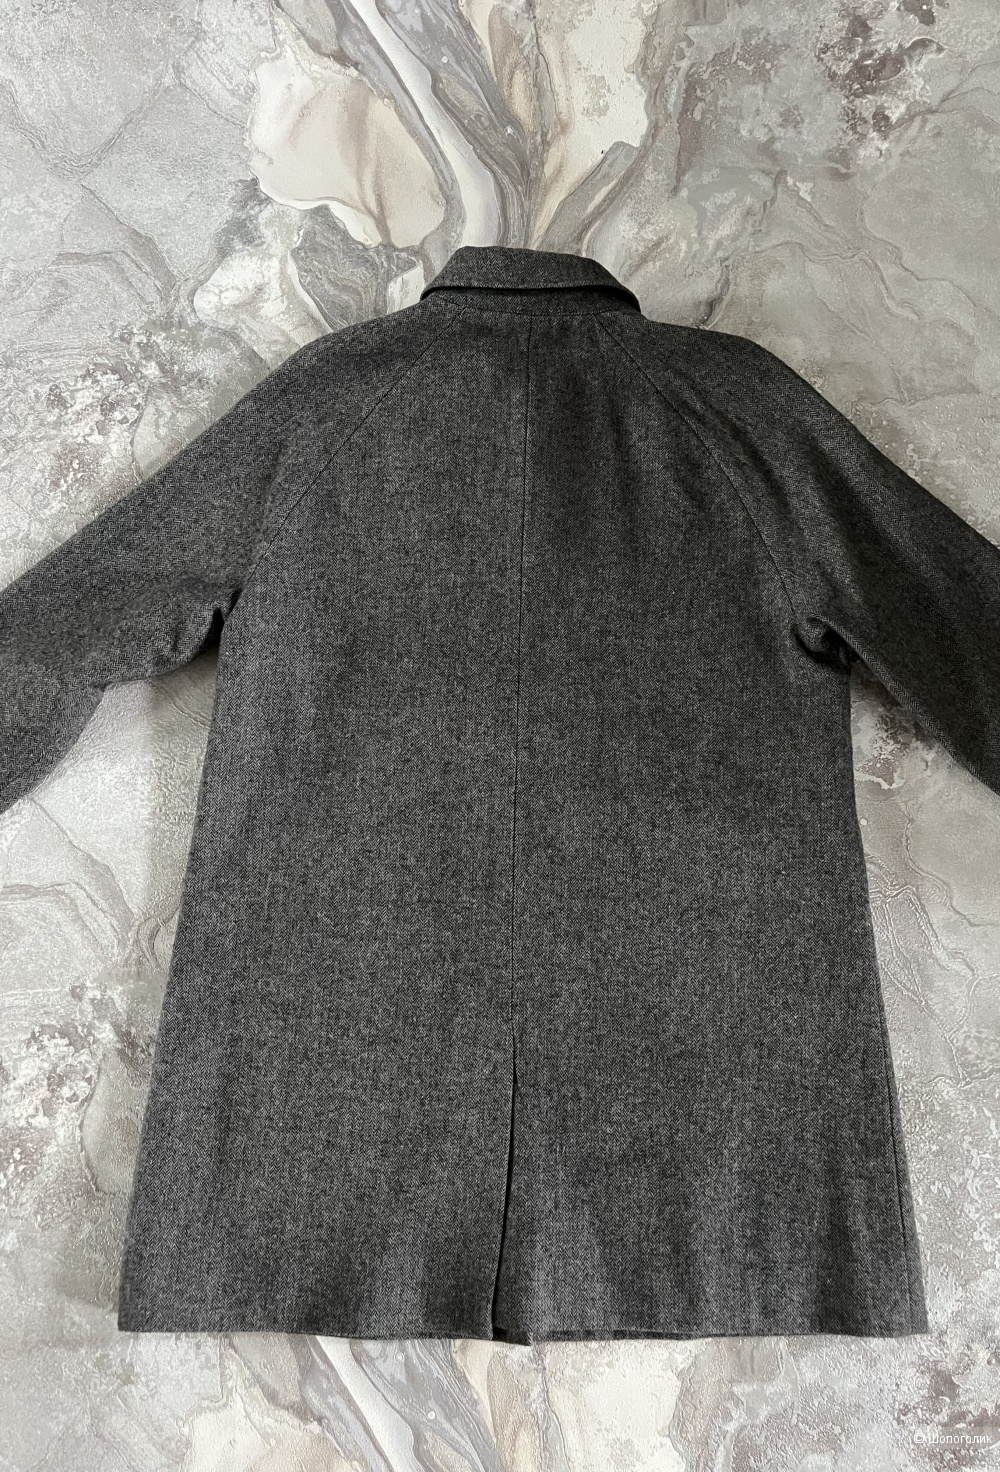 Пальто мужское FARAH размер XL